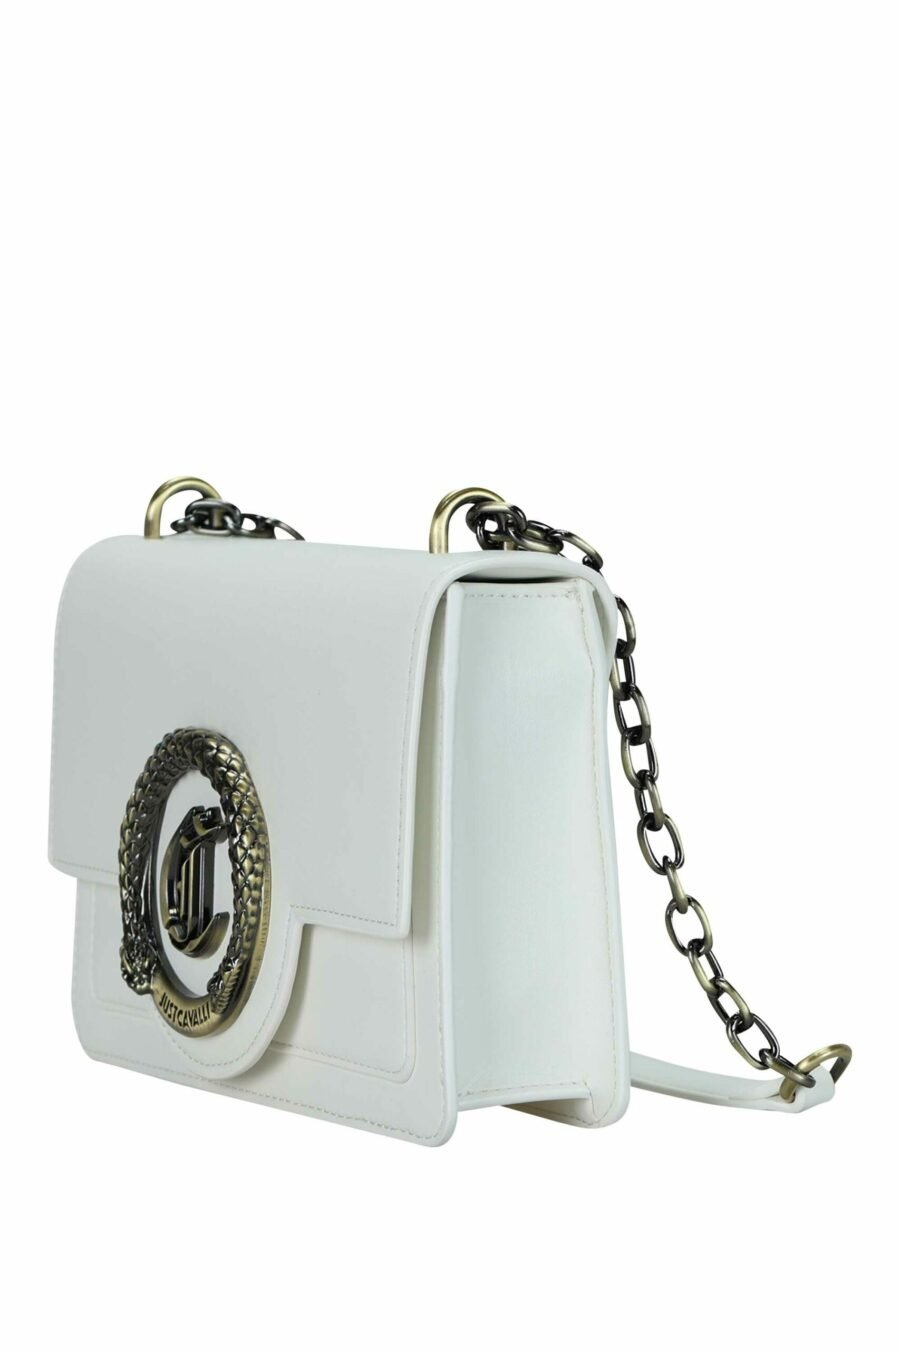 Bolso bandolera blanco cuadrado con cadena y logo circular "c" dorado - 8052672735584 1 scaled